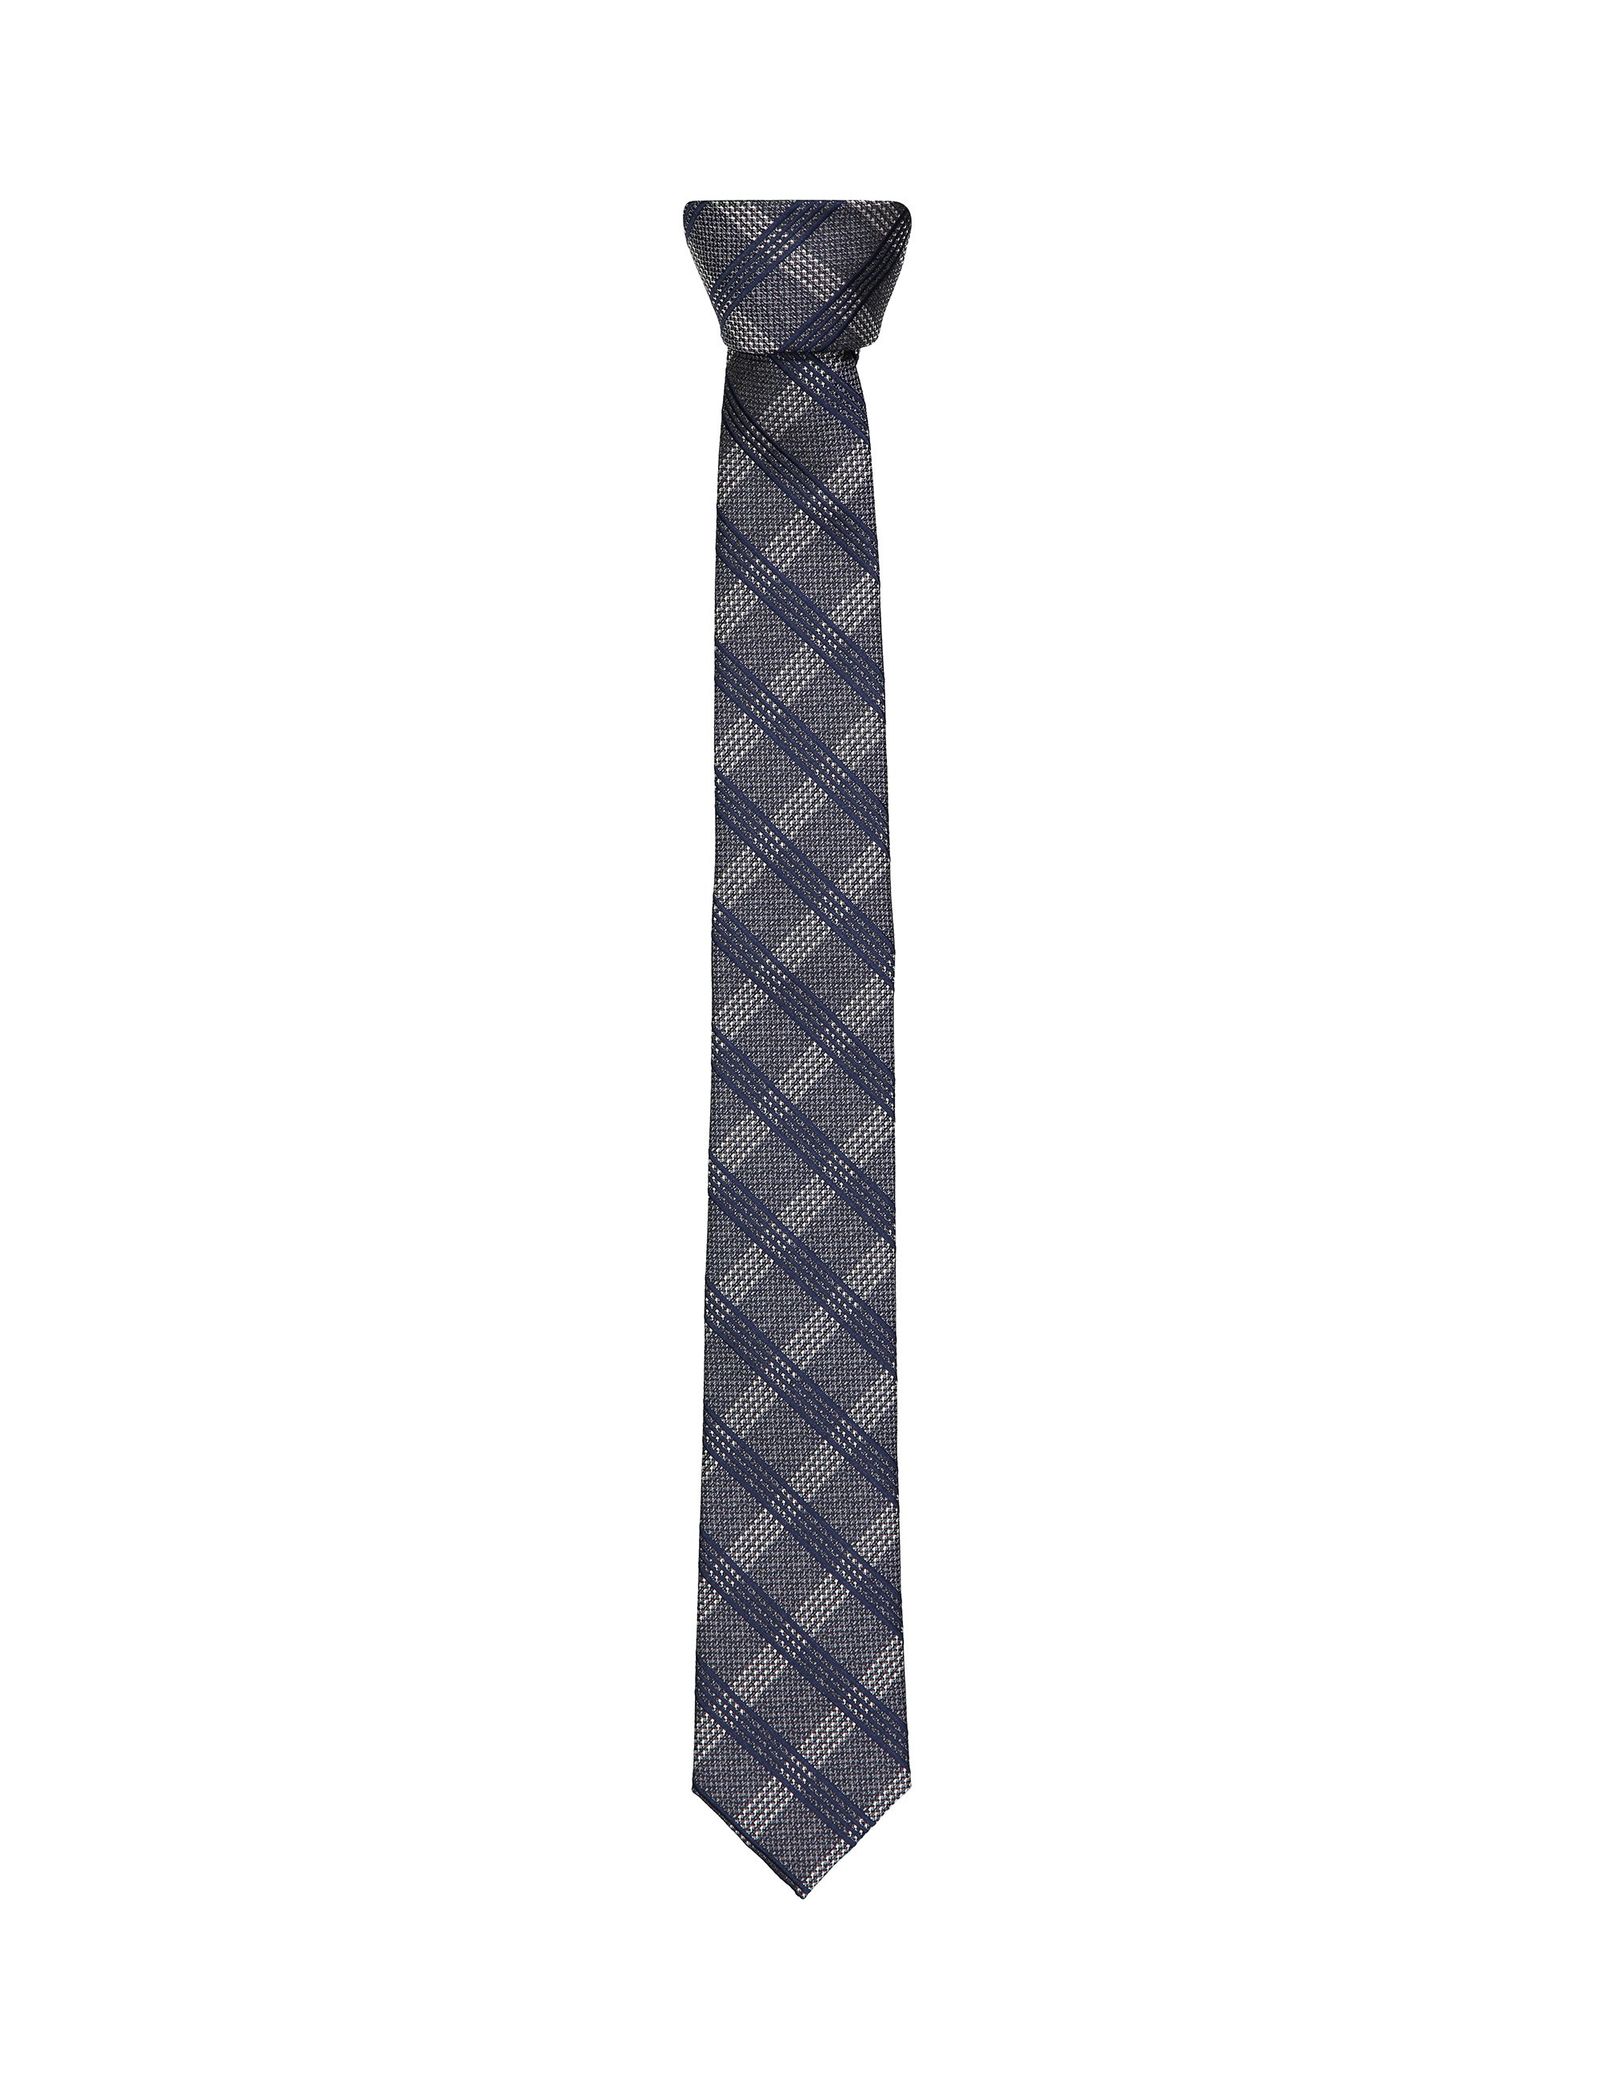 کراوات طرح دار مردانه - سلکتد - طوسي - 1